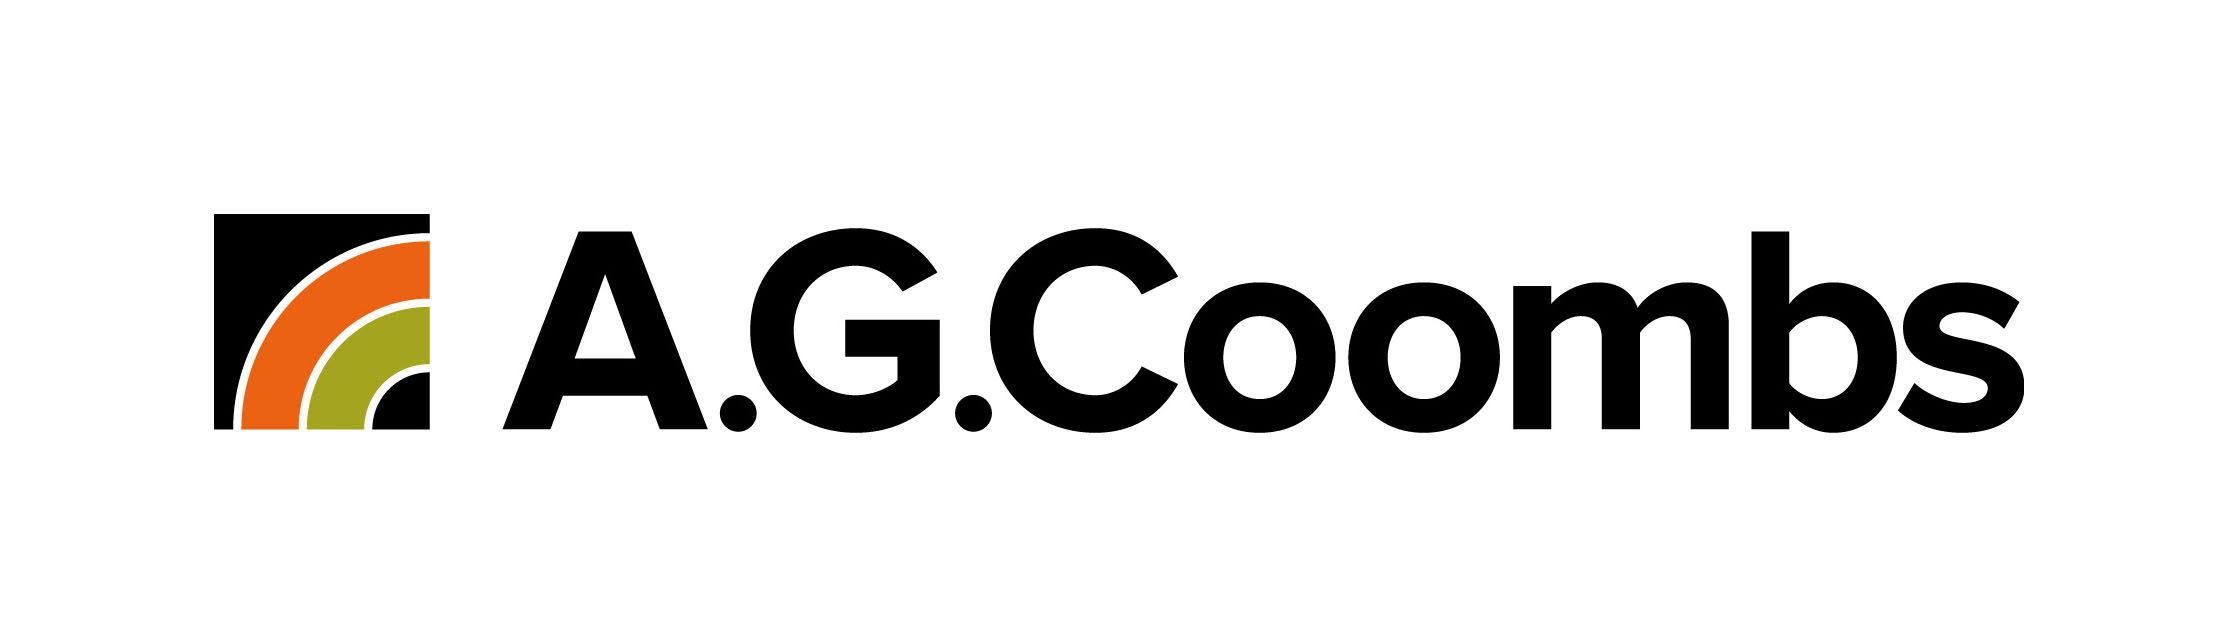 A.G Coombs logo